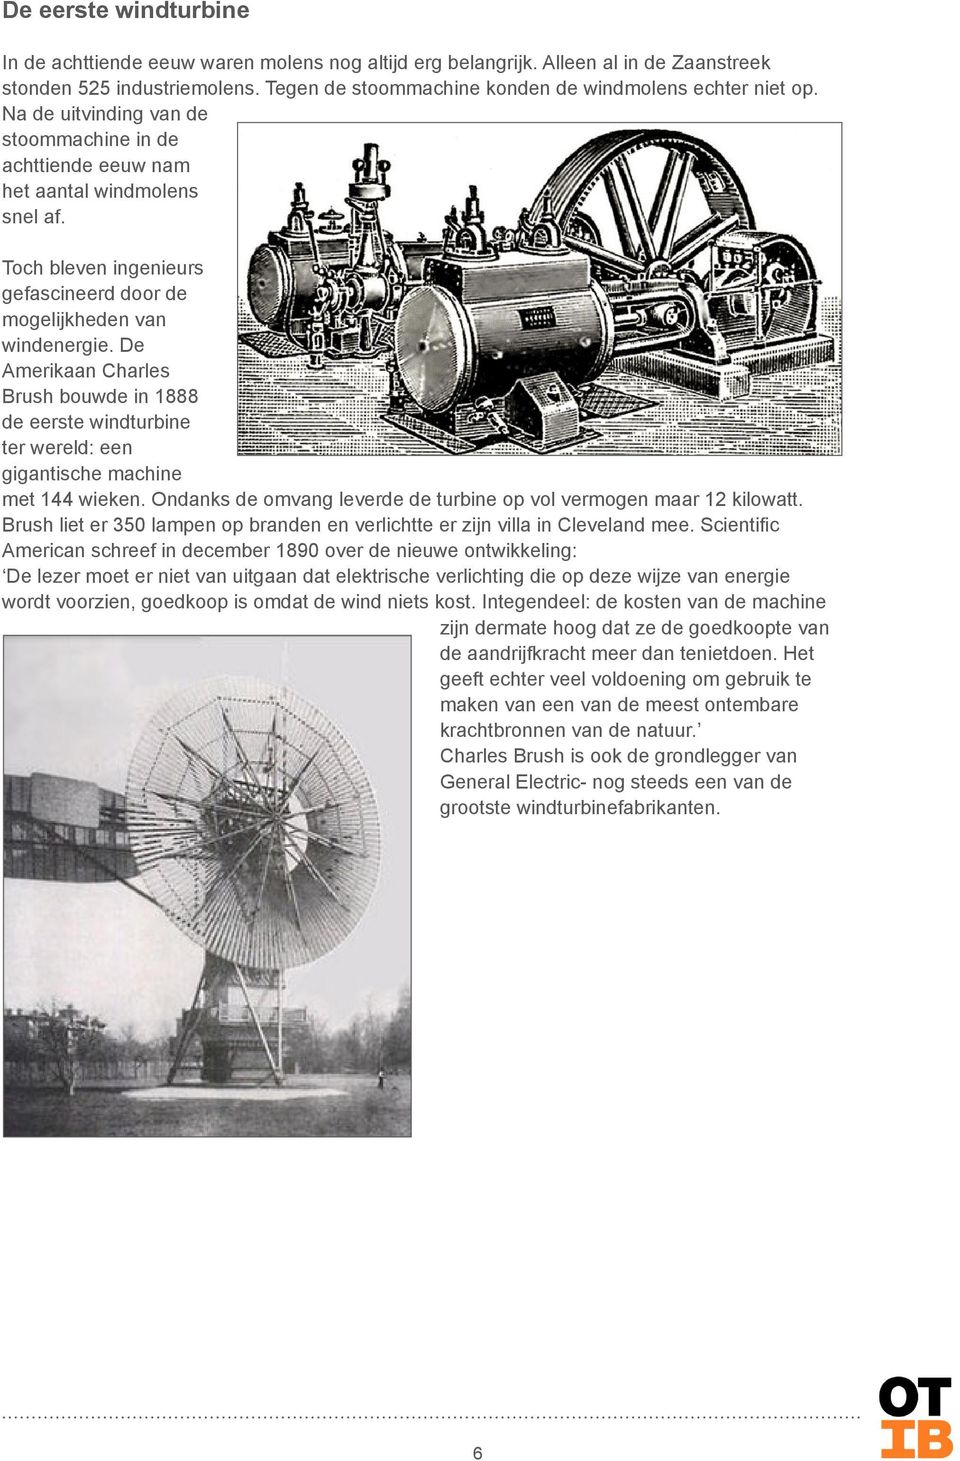 De Amerikaan Charles Brush bouwde in 1888 de eerste windturbine ter wereld: een gigantische machine met 144 wieken. Ondanks de omvang leverde de turbine op vol vermogen maar 12 kilowatt.